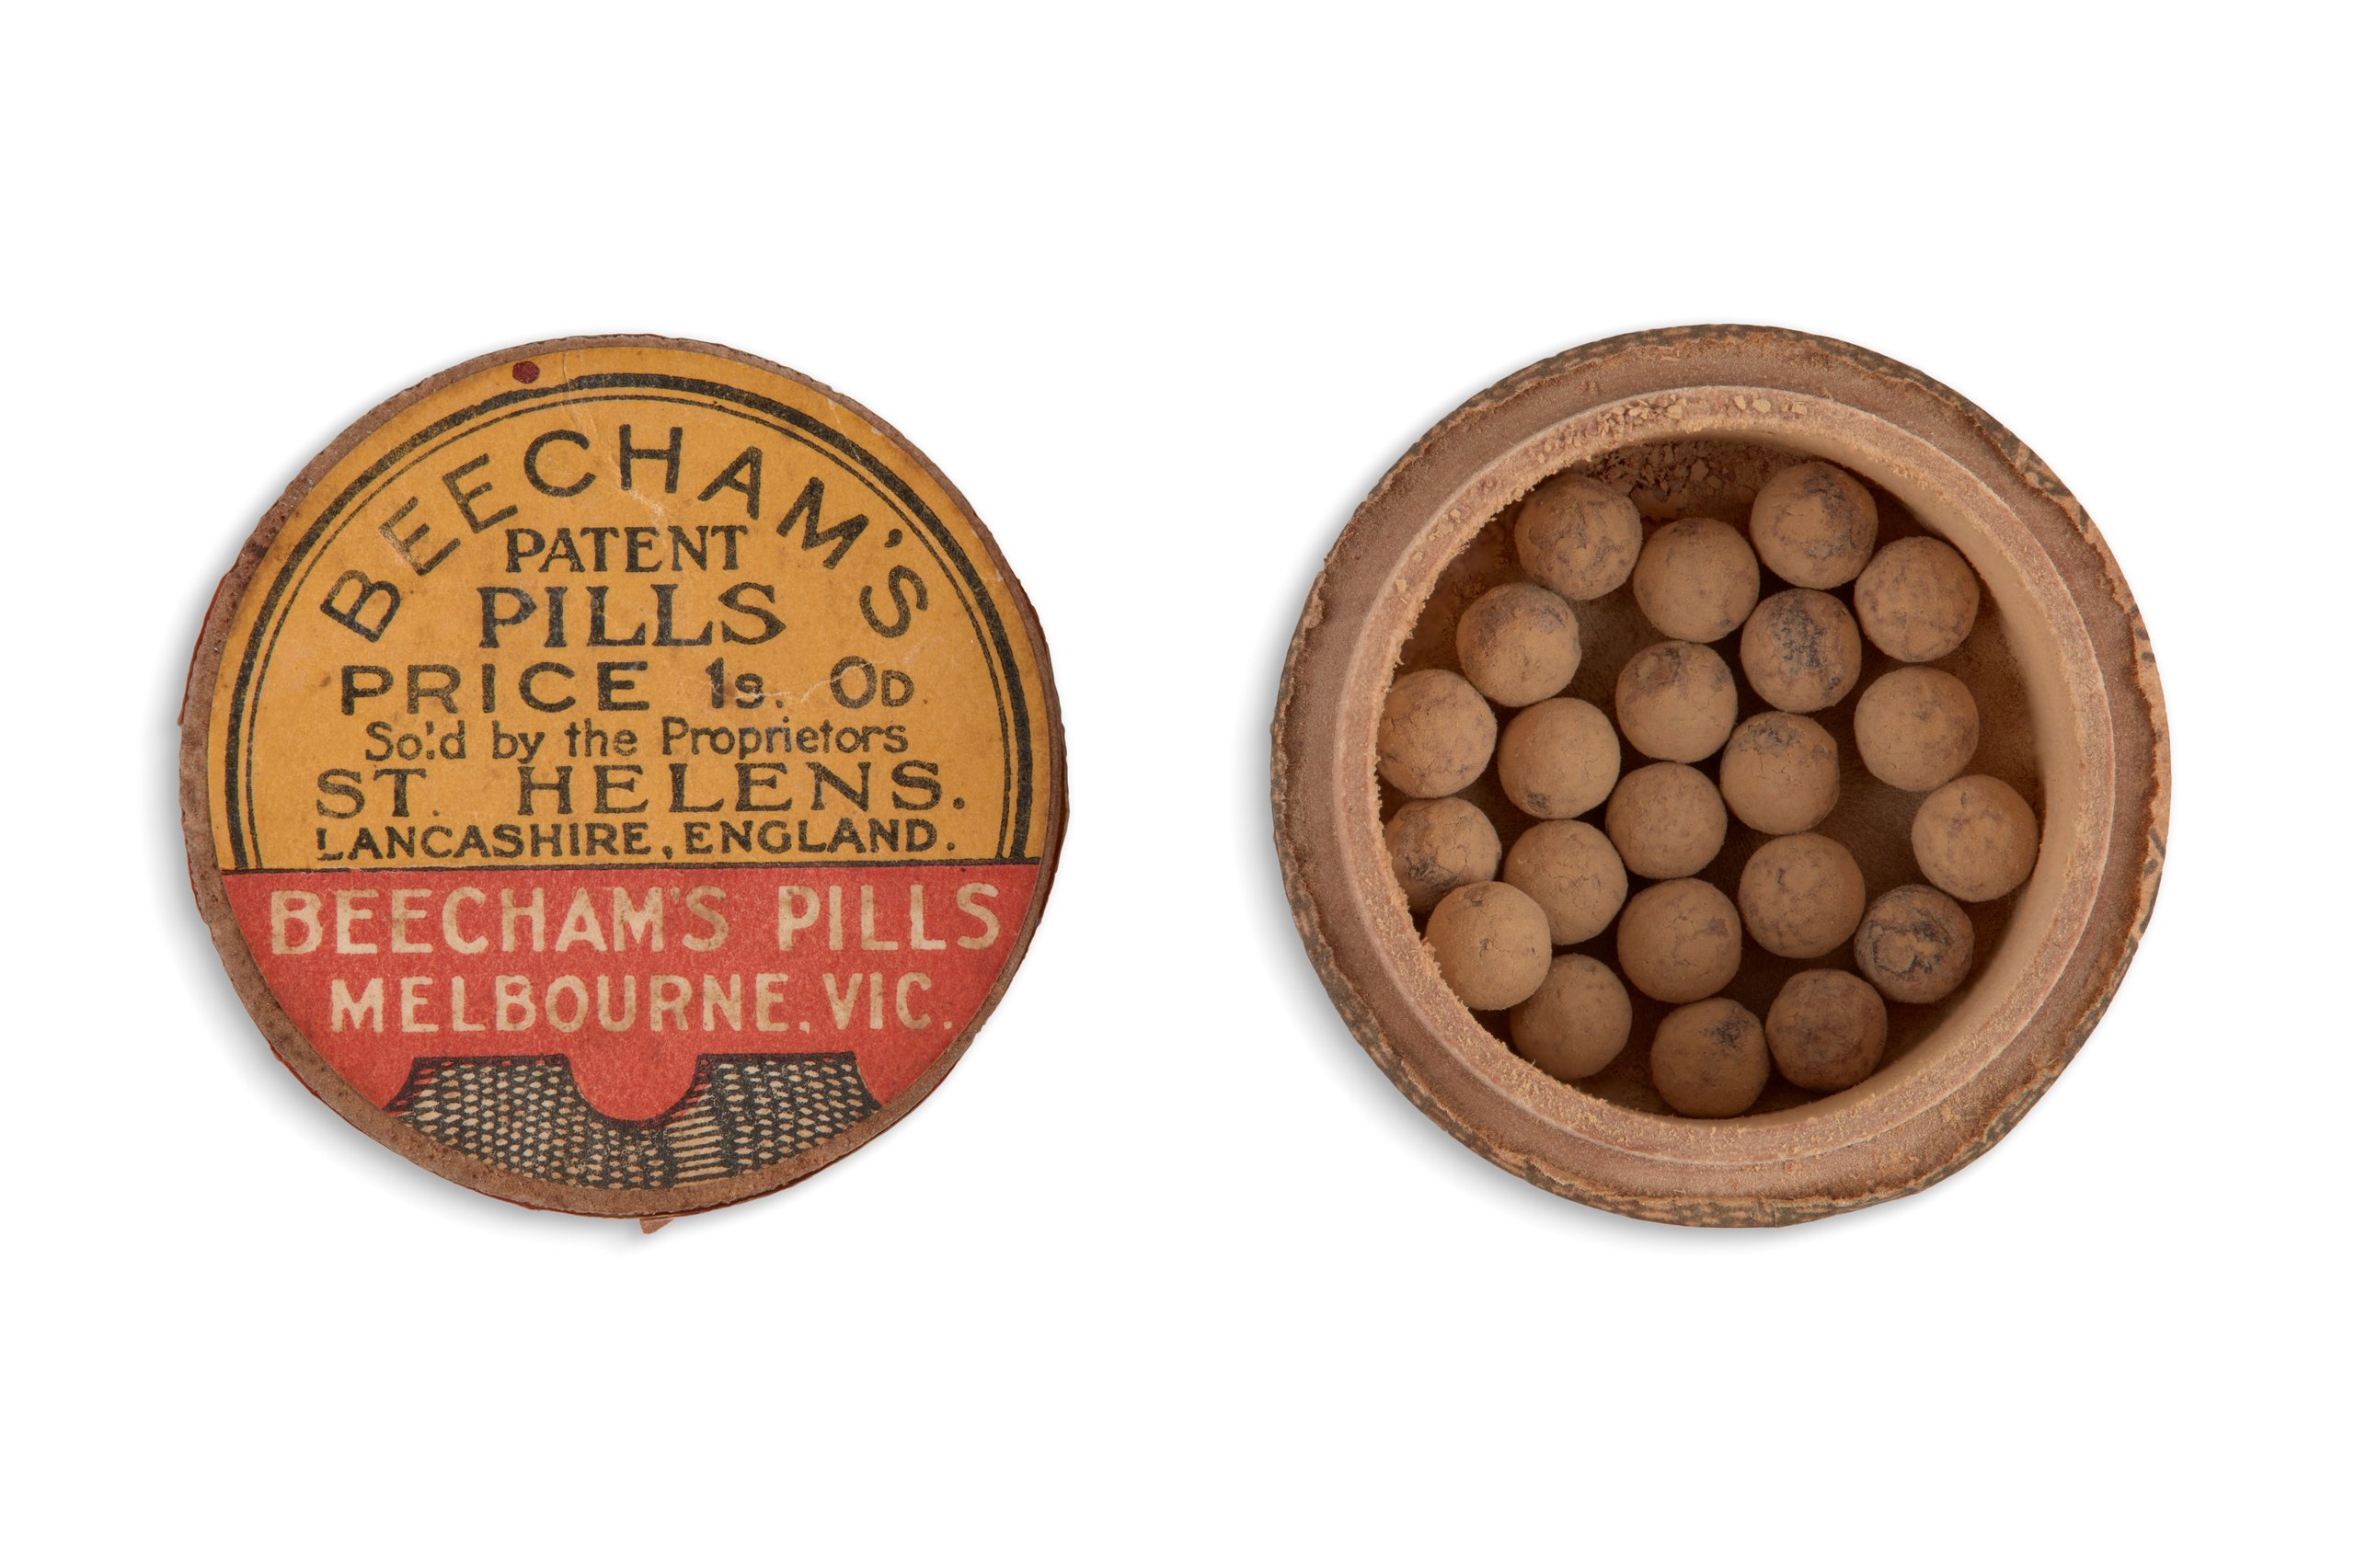 Container of 'Beecham's Pills'